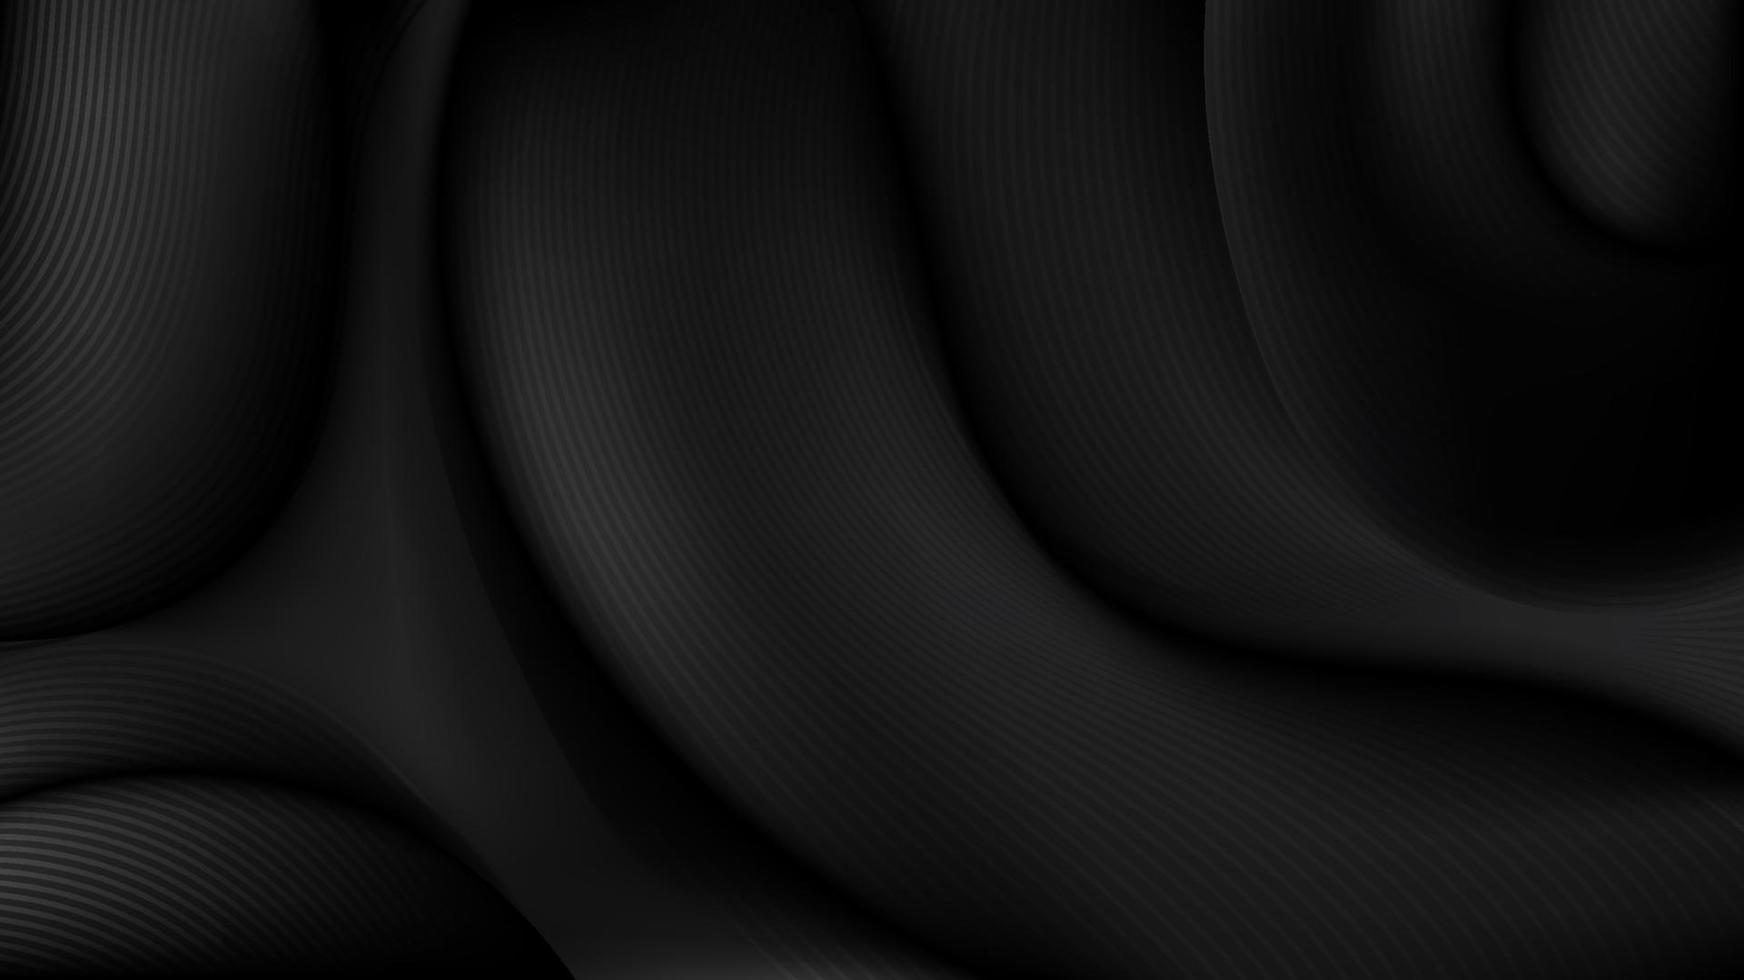 rugas de tecido preto 3d elegante abstrato com textura de padrão de linhas em fundo escuro vetor